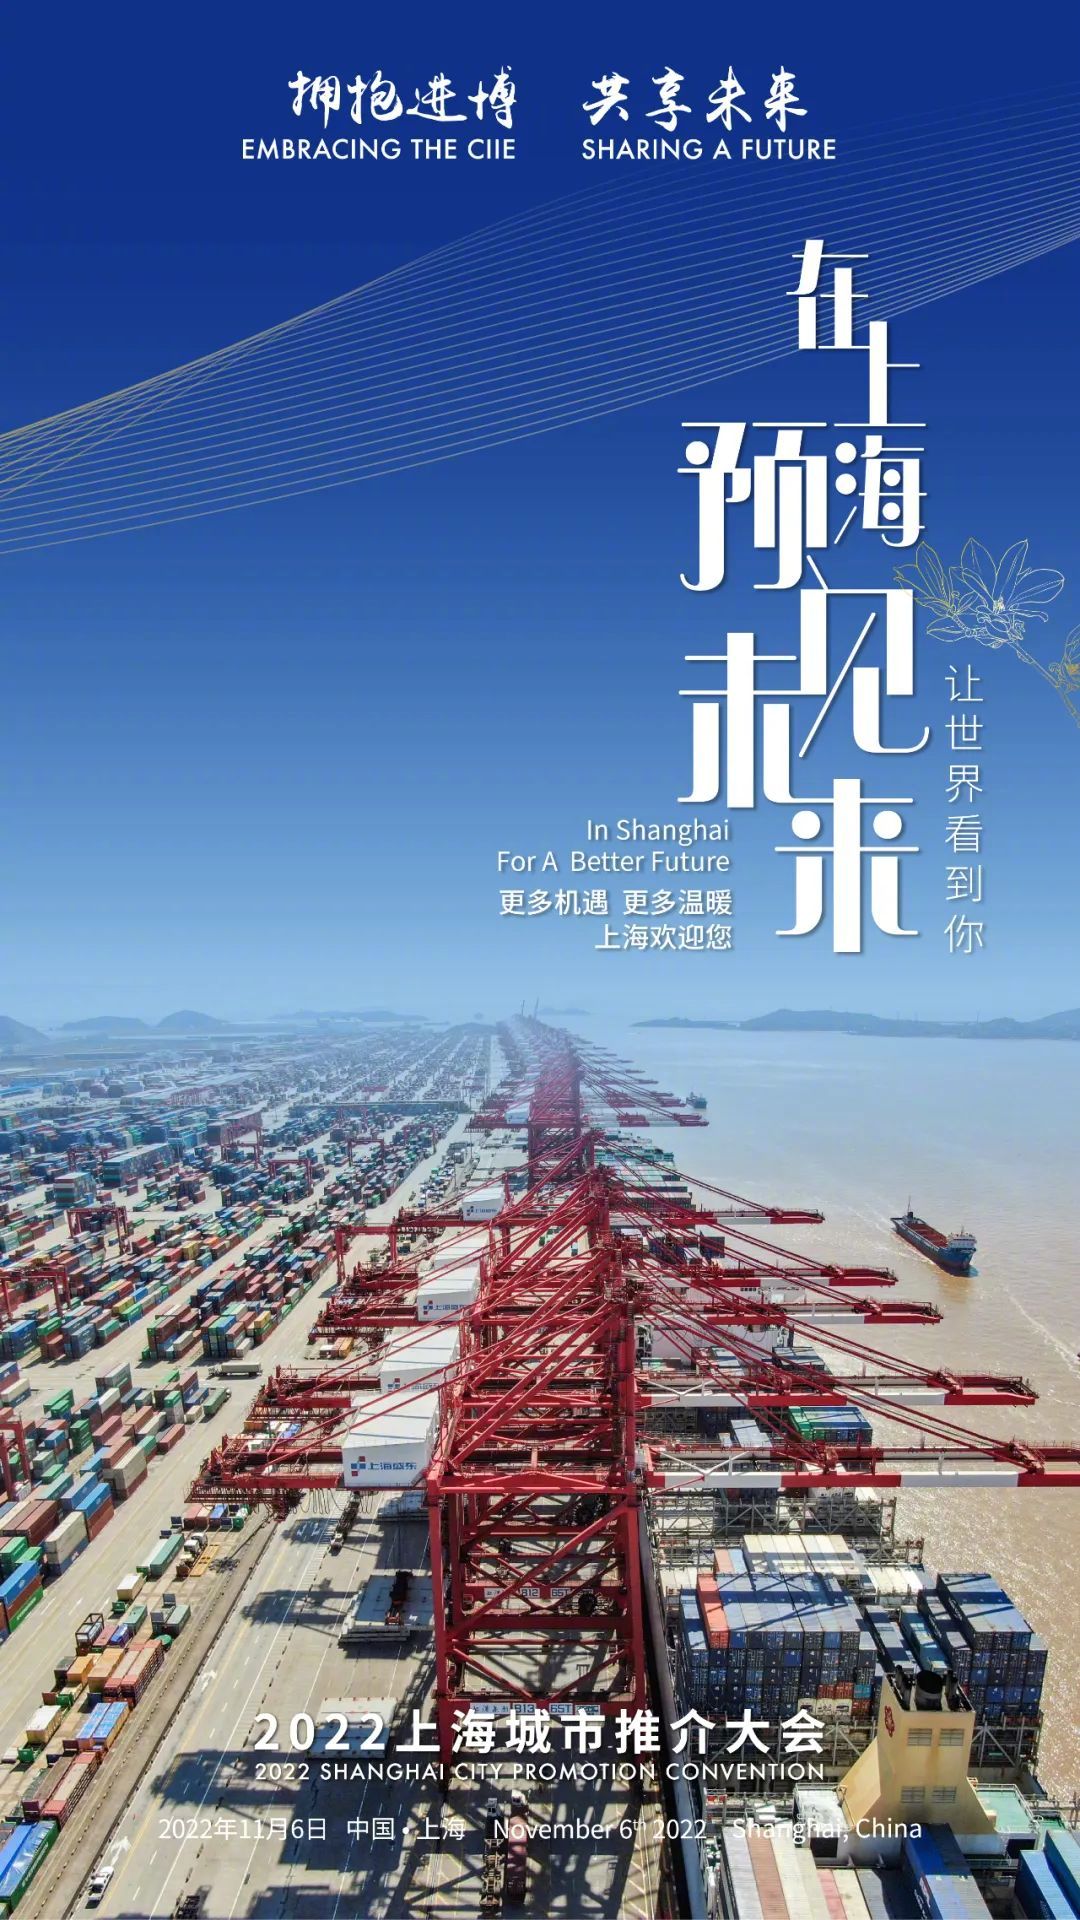 2022上海城市推介大会将于11月6日举办-泛亚电竞